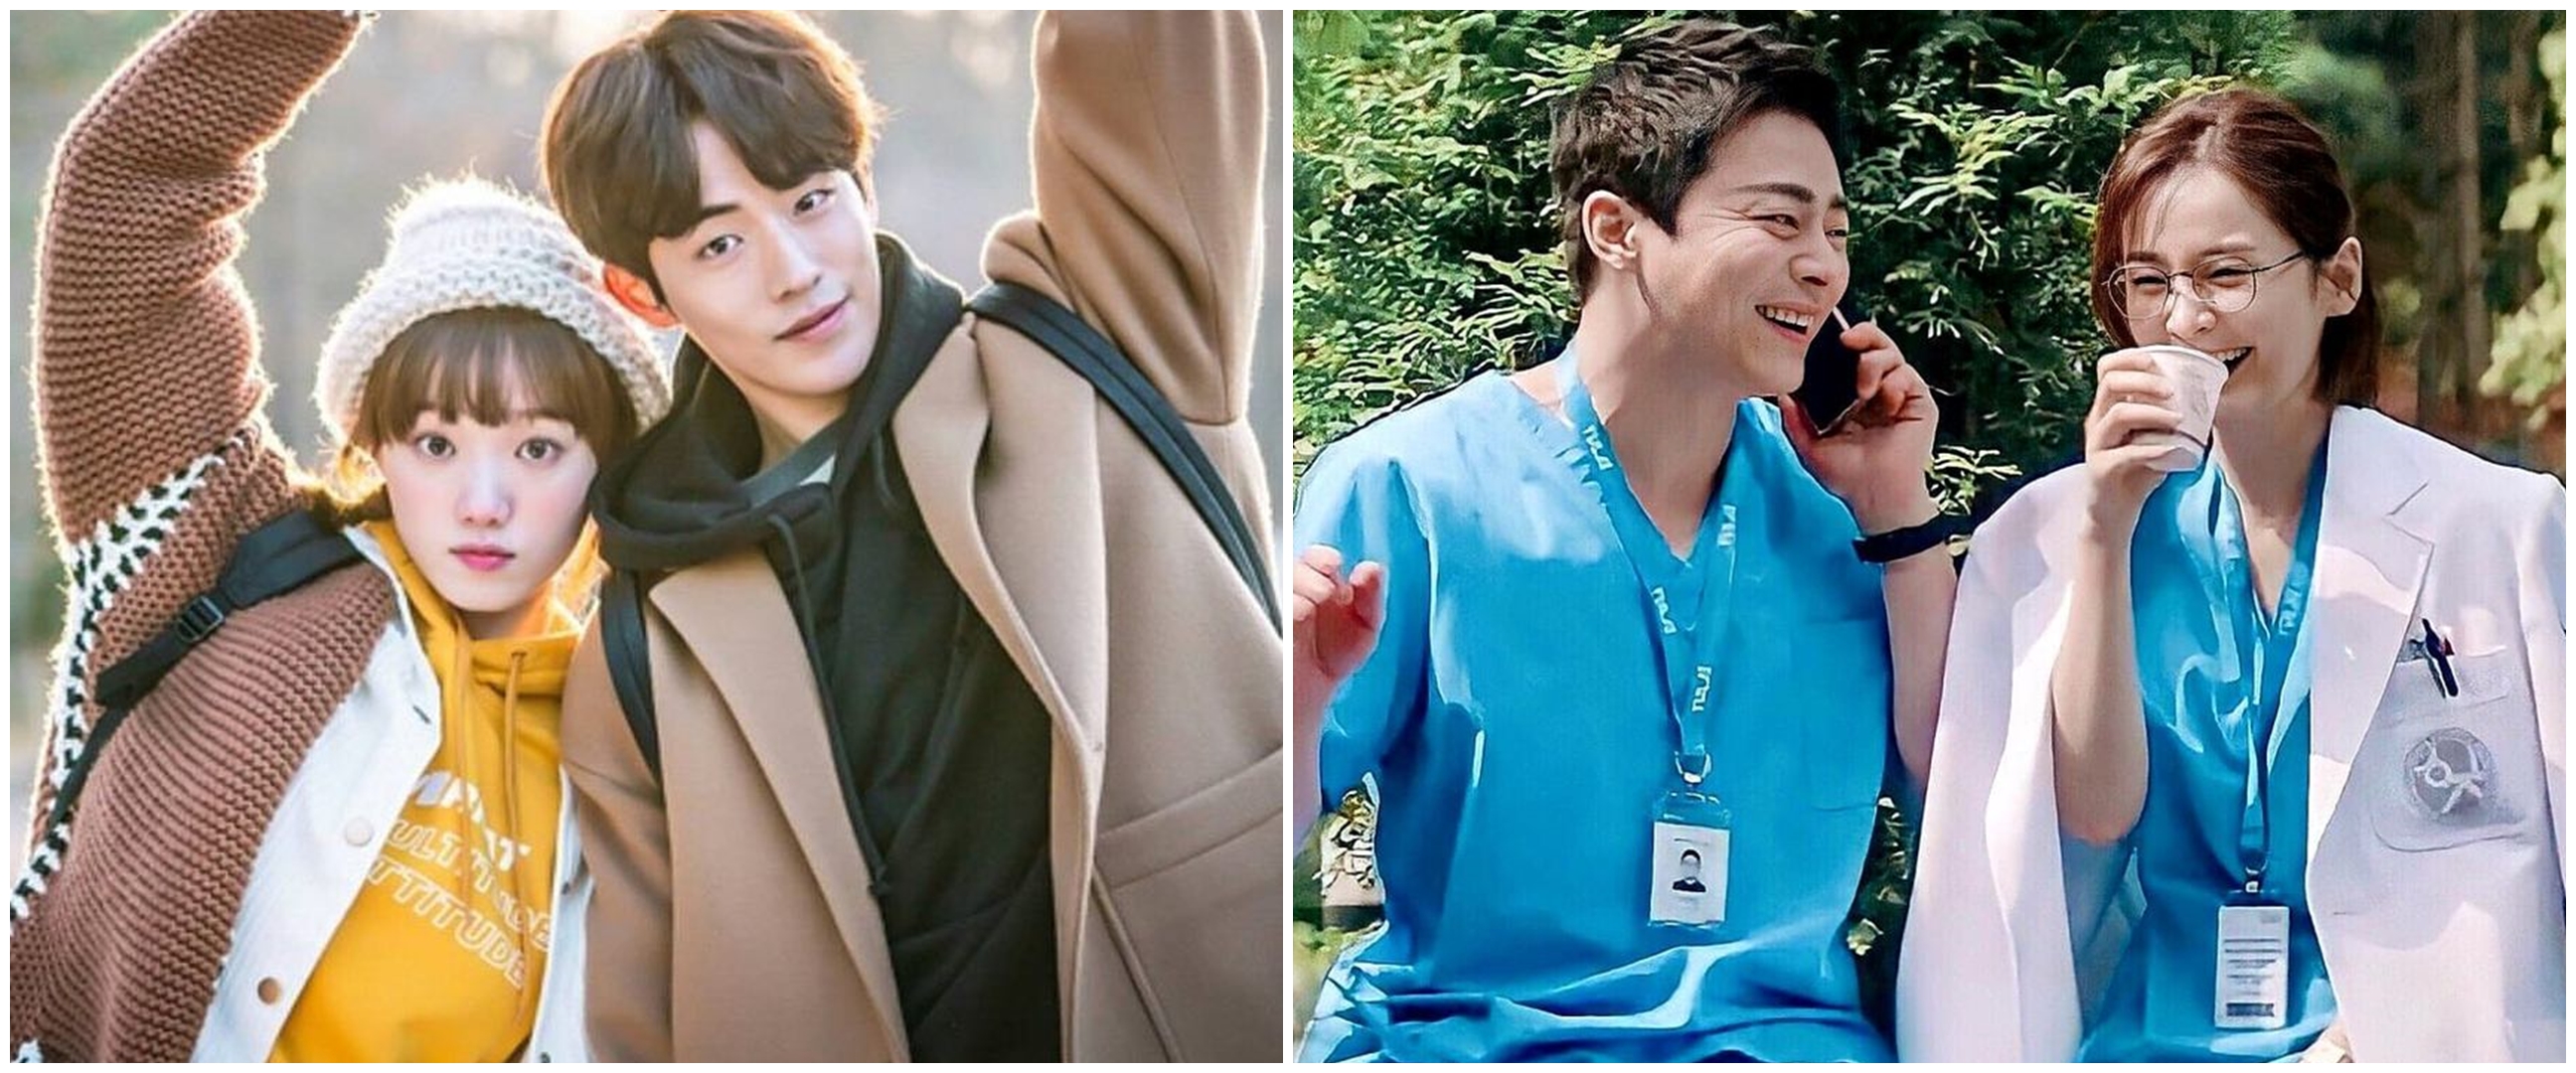 Siapa tokoh drama Korea romantis yang cocok sama kamu? Temukan di sini